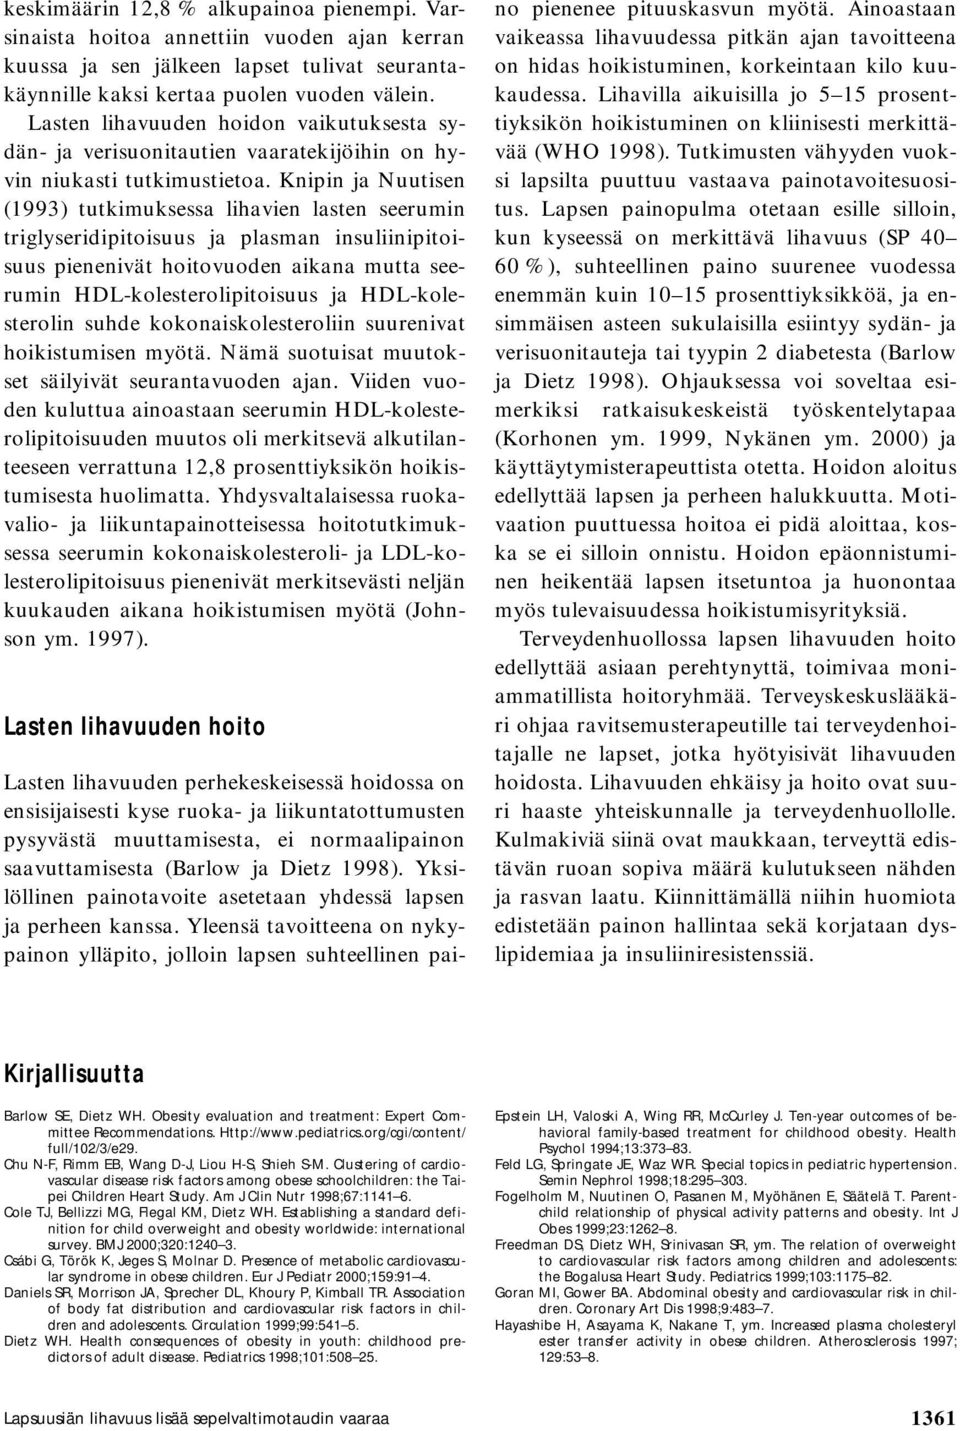 Knipin ja Nuutisen (1993) tutkimuksessa lihavien lasten seerumin triglyseridipitoisuus ja plasman insuliinipitoisuus pienenivät hoitovuoden aikana mutta seerumin HDL-kolesterolipitoisuus ja